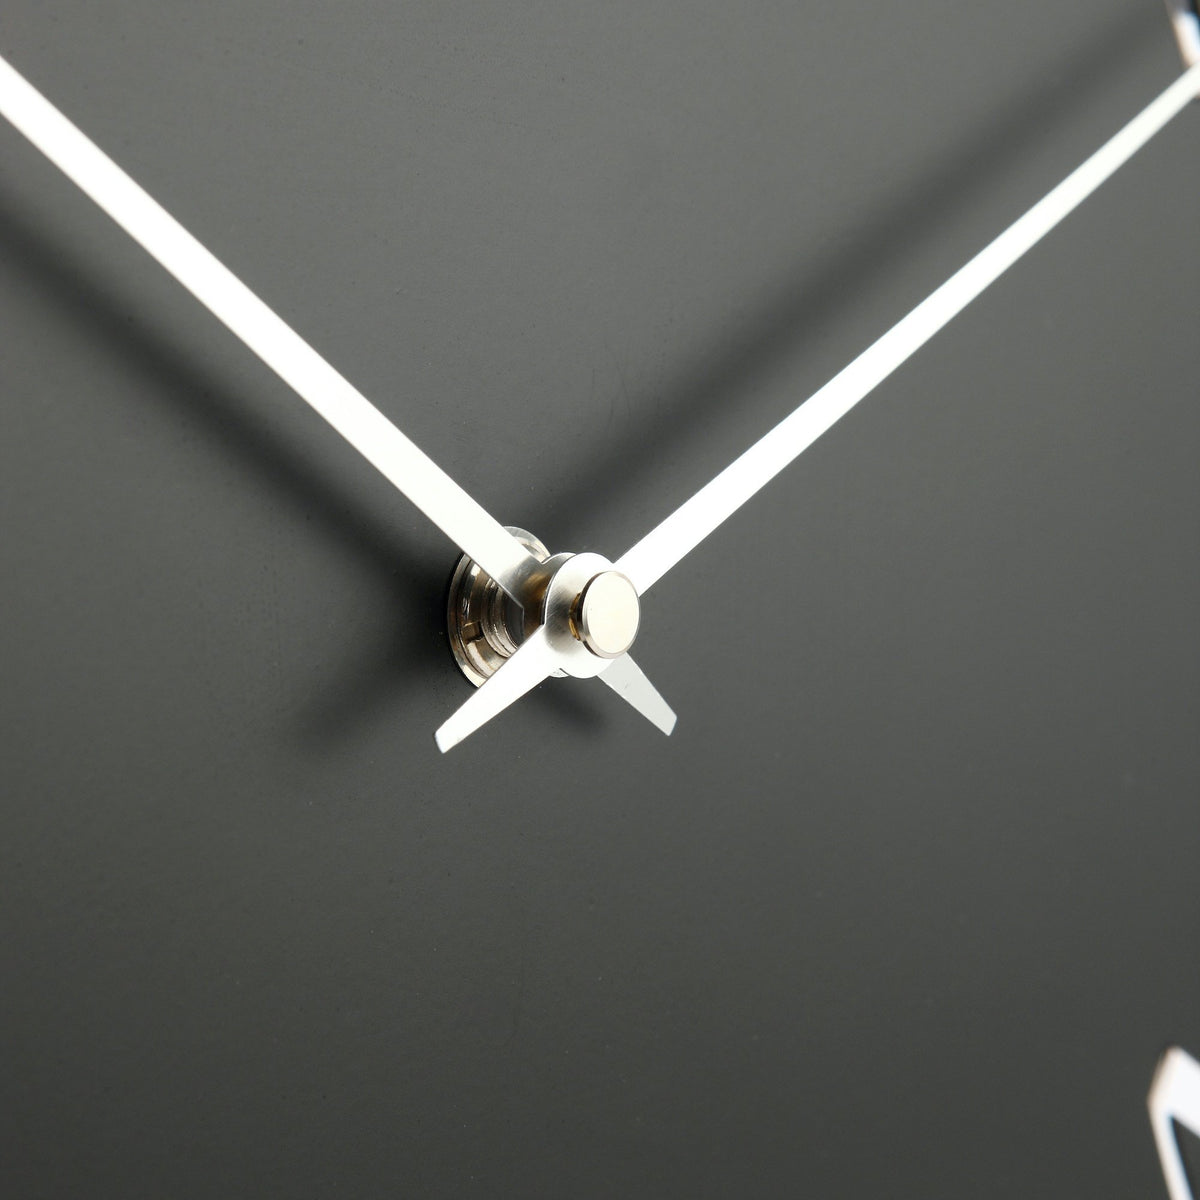 NeXtime - Table clock – 40 x 40.5 cm - Metal - Light unit- Black - &#39;Ting Table&#39;